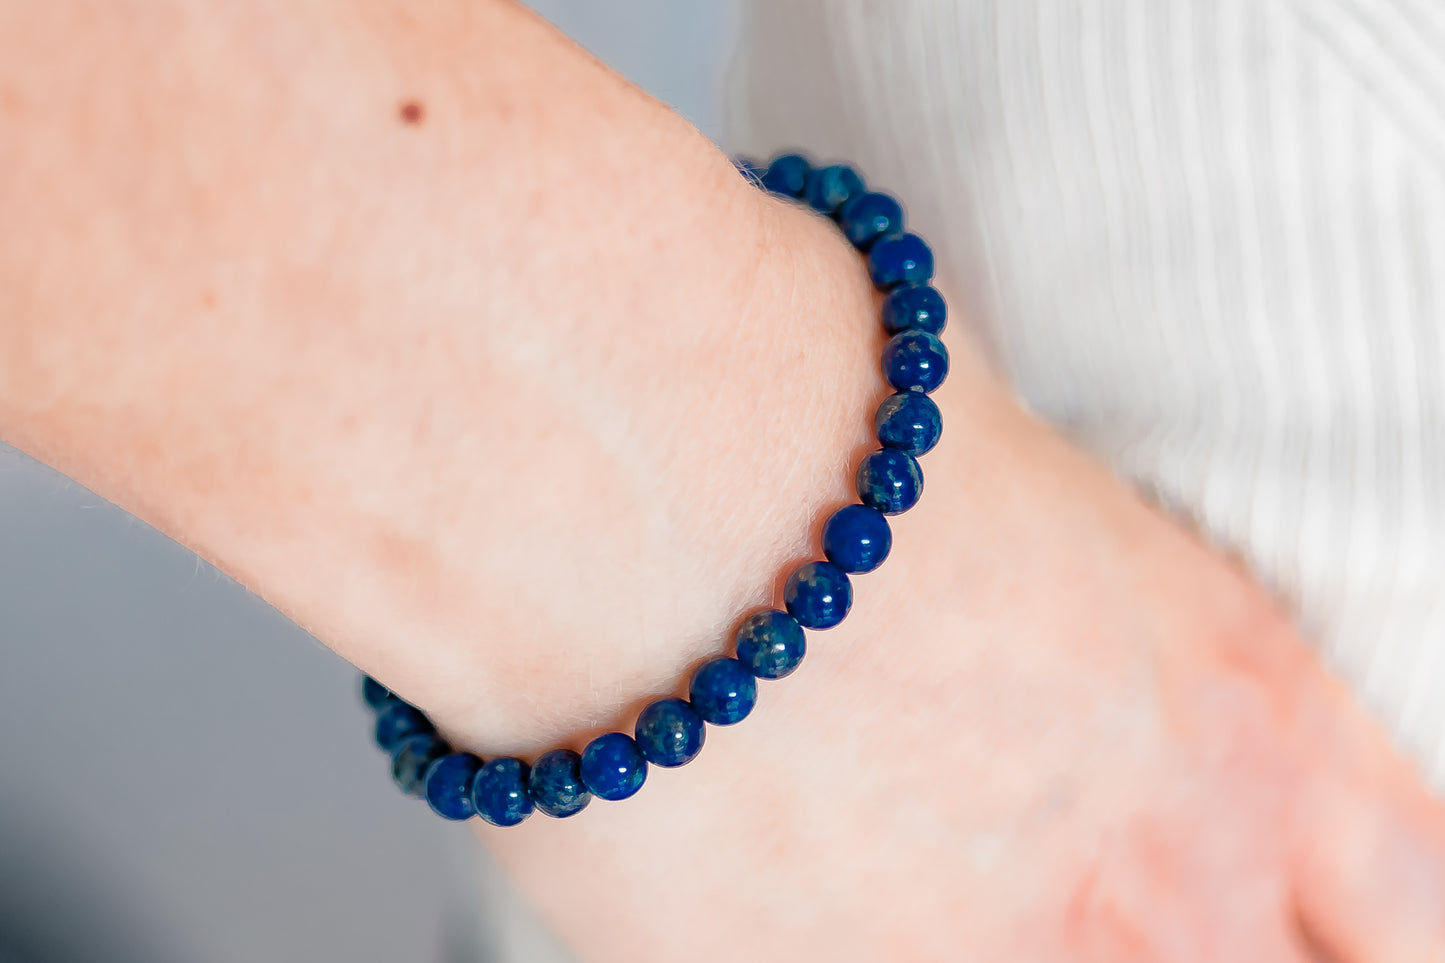 Lapislazuli Edelstein-Armband “Gelassenheit” - Fördert Loyalität, Aufrichtigkeit und Selbstakzeptanz  - Perfektes spirituelles Geschenk